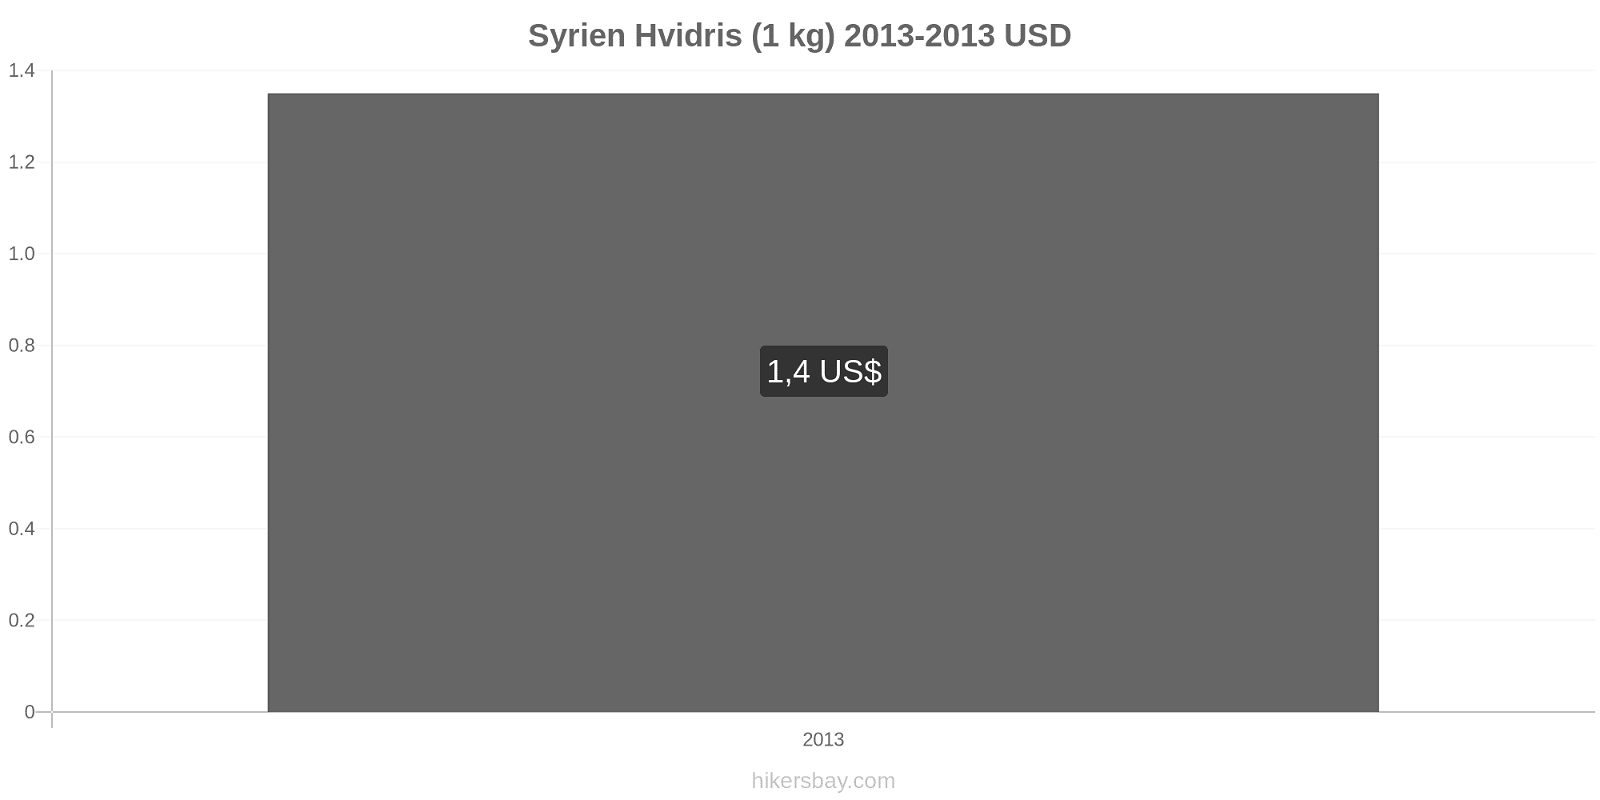 Syrien prisændringer Kilo hvid ris hikersbay.com